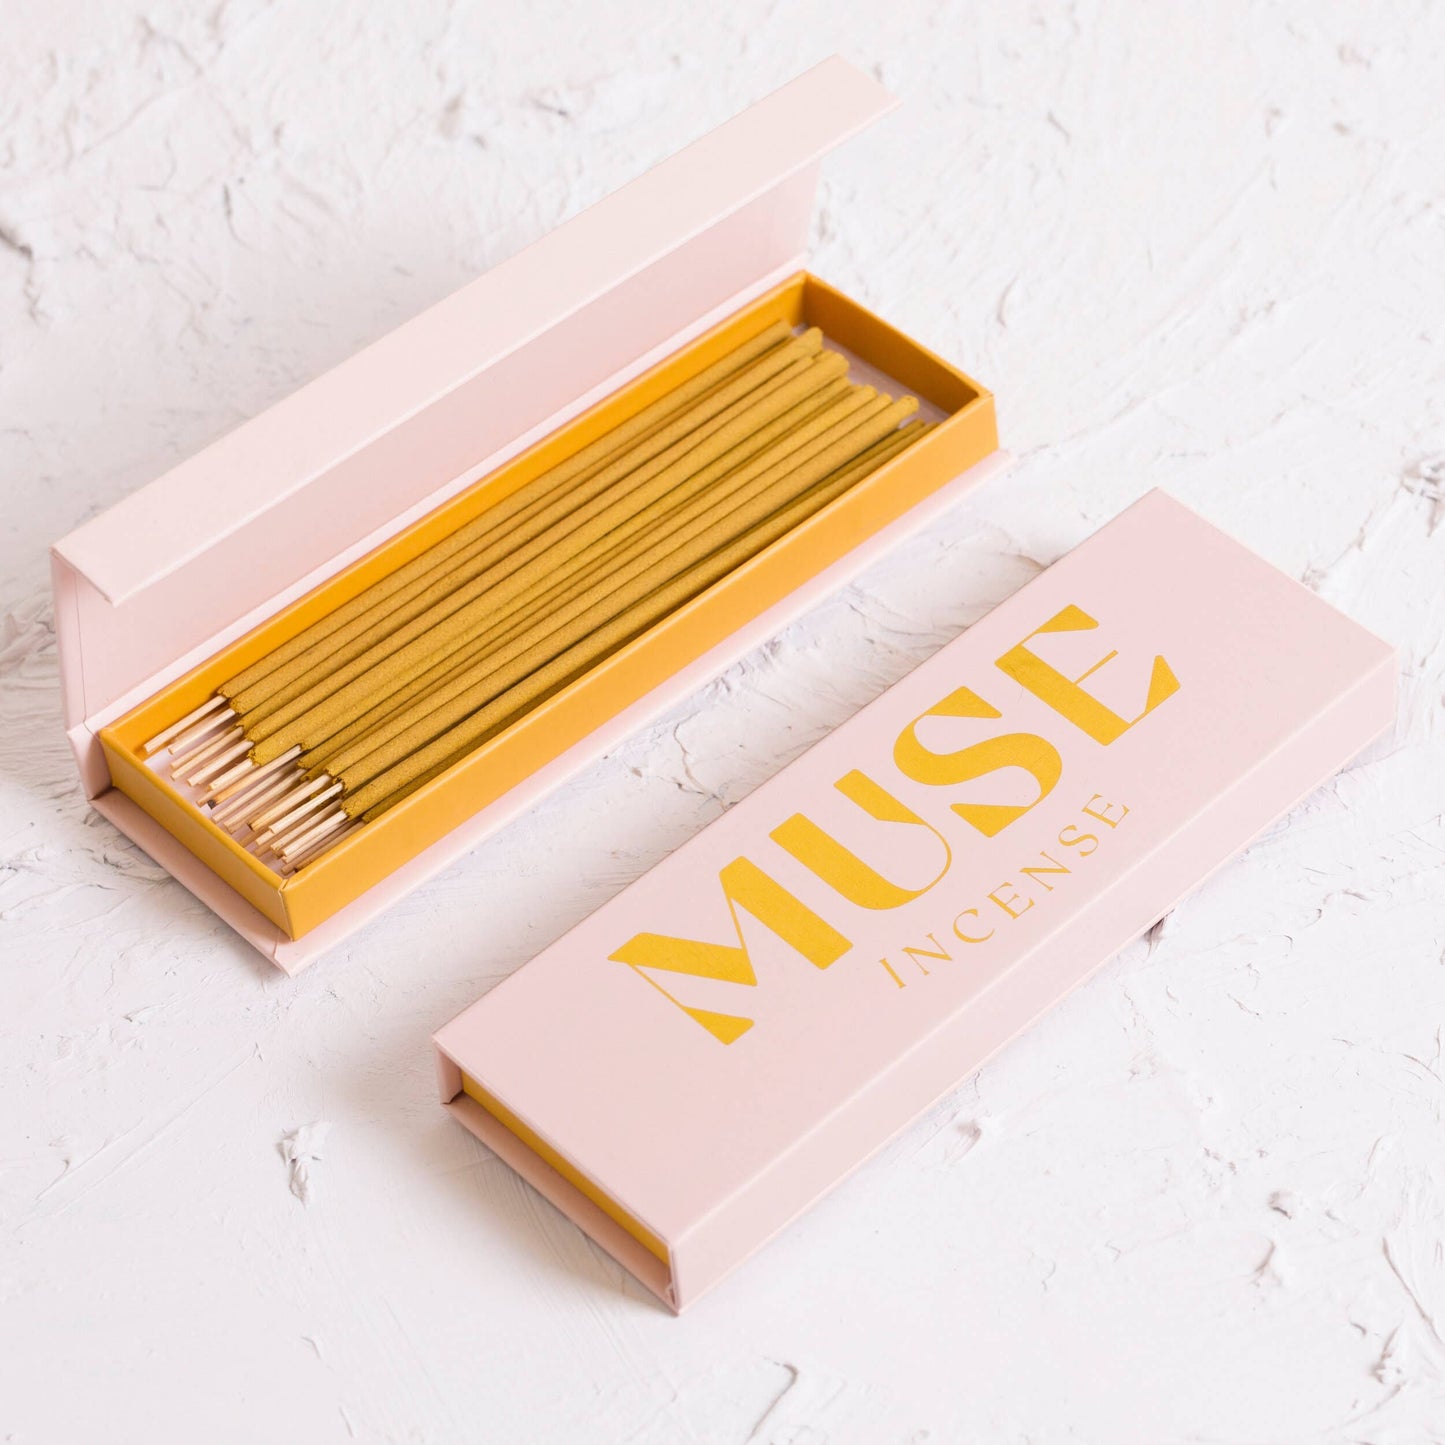 Frankincense Incense - Muse Natural Incense Box